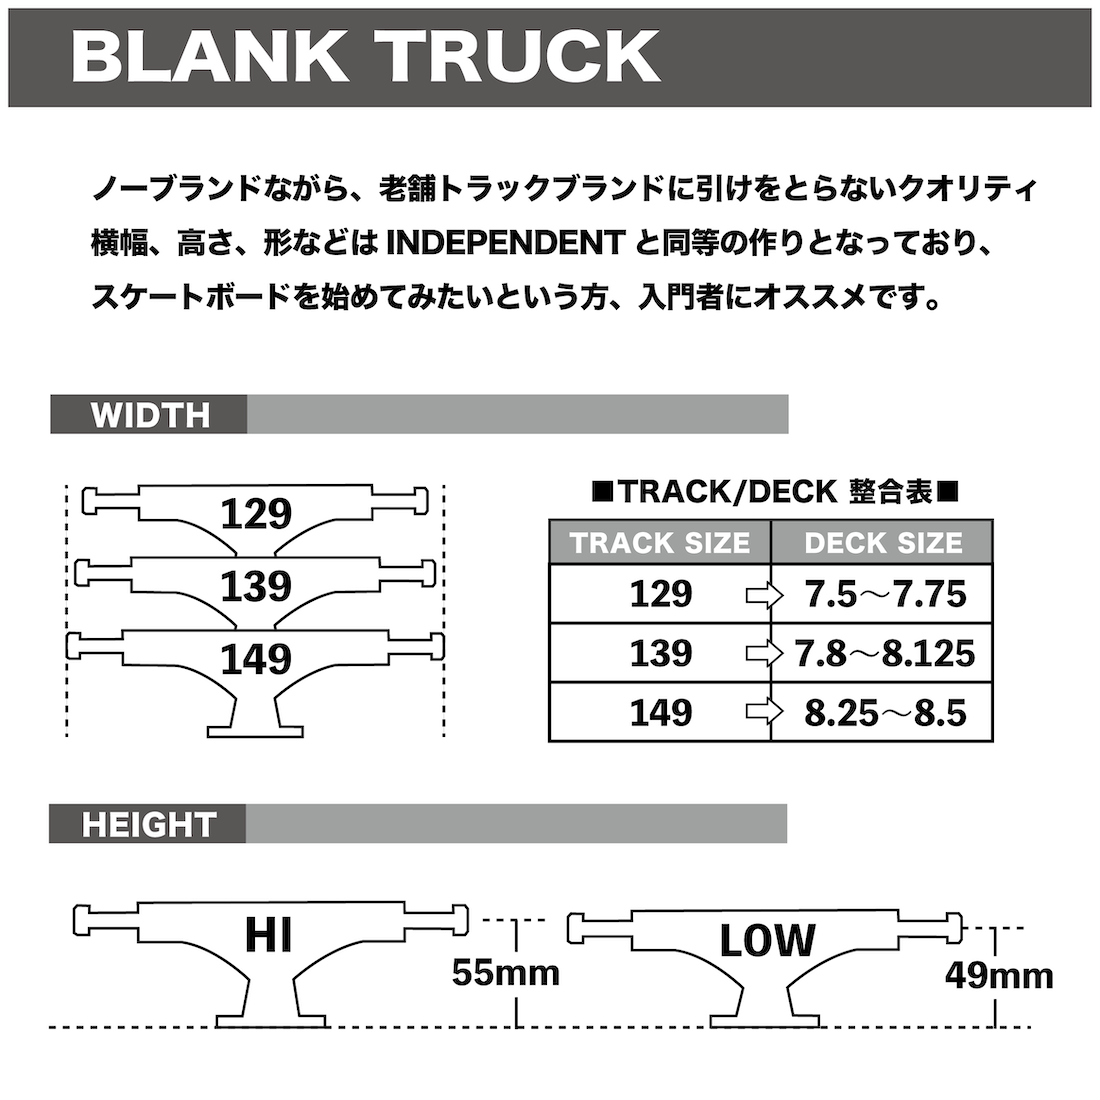 【Blank Truck】 Standard -129